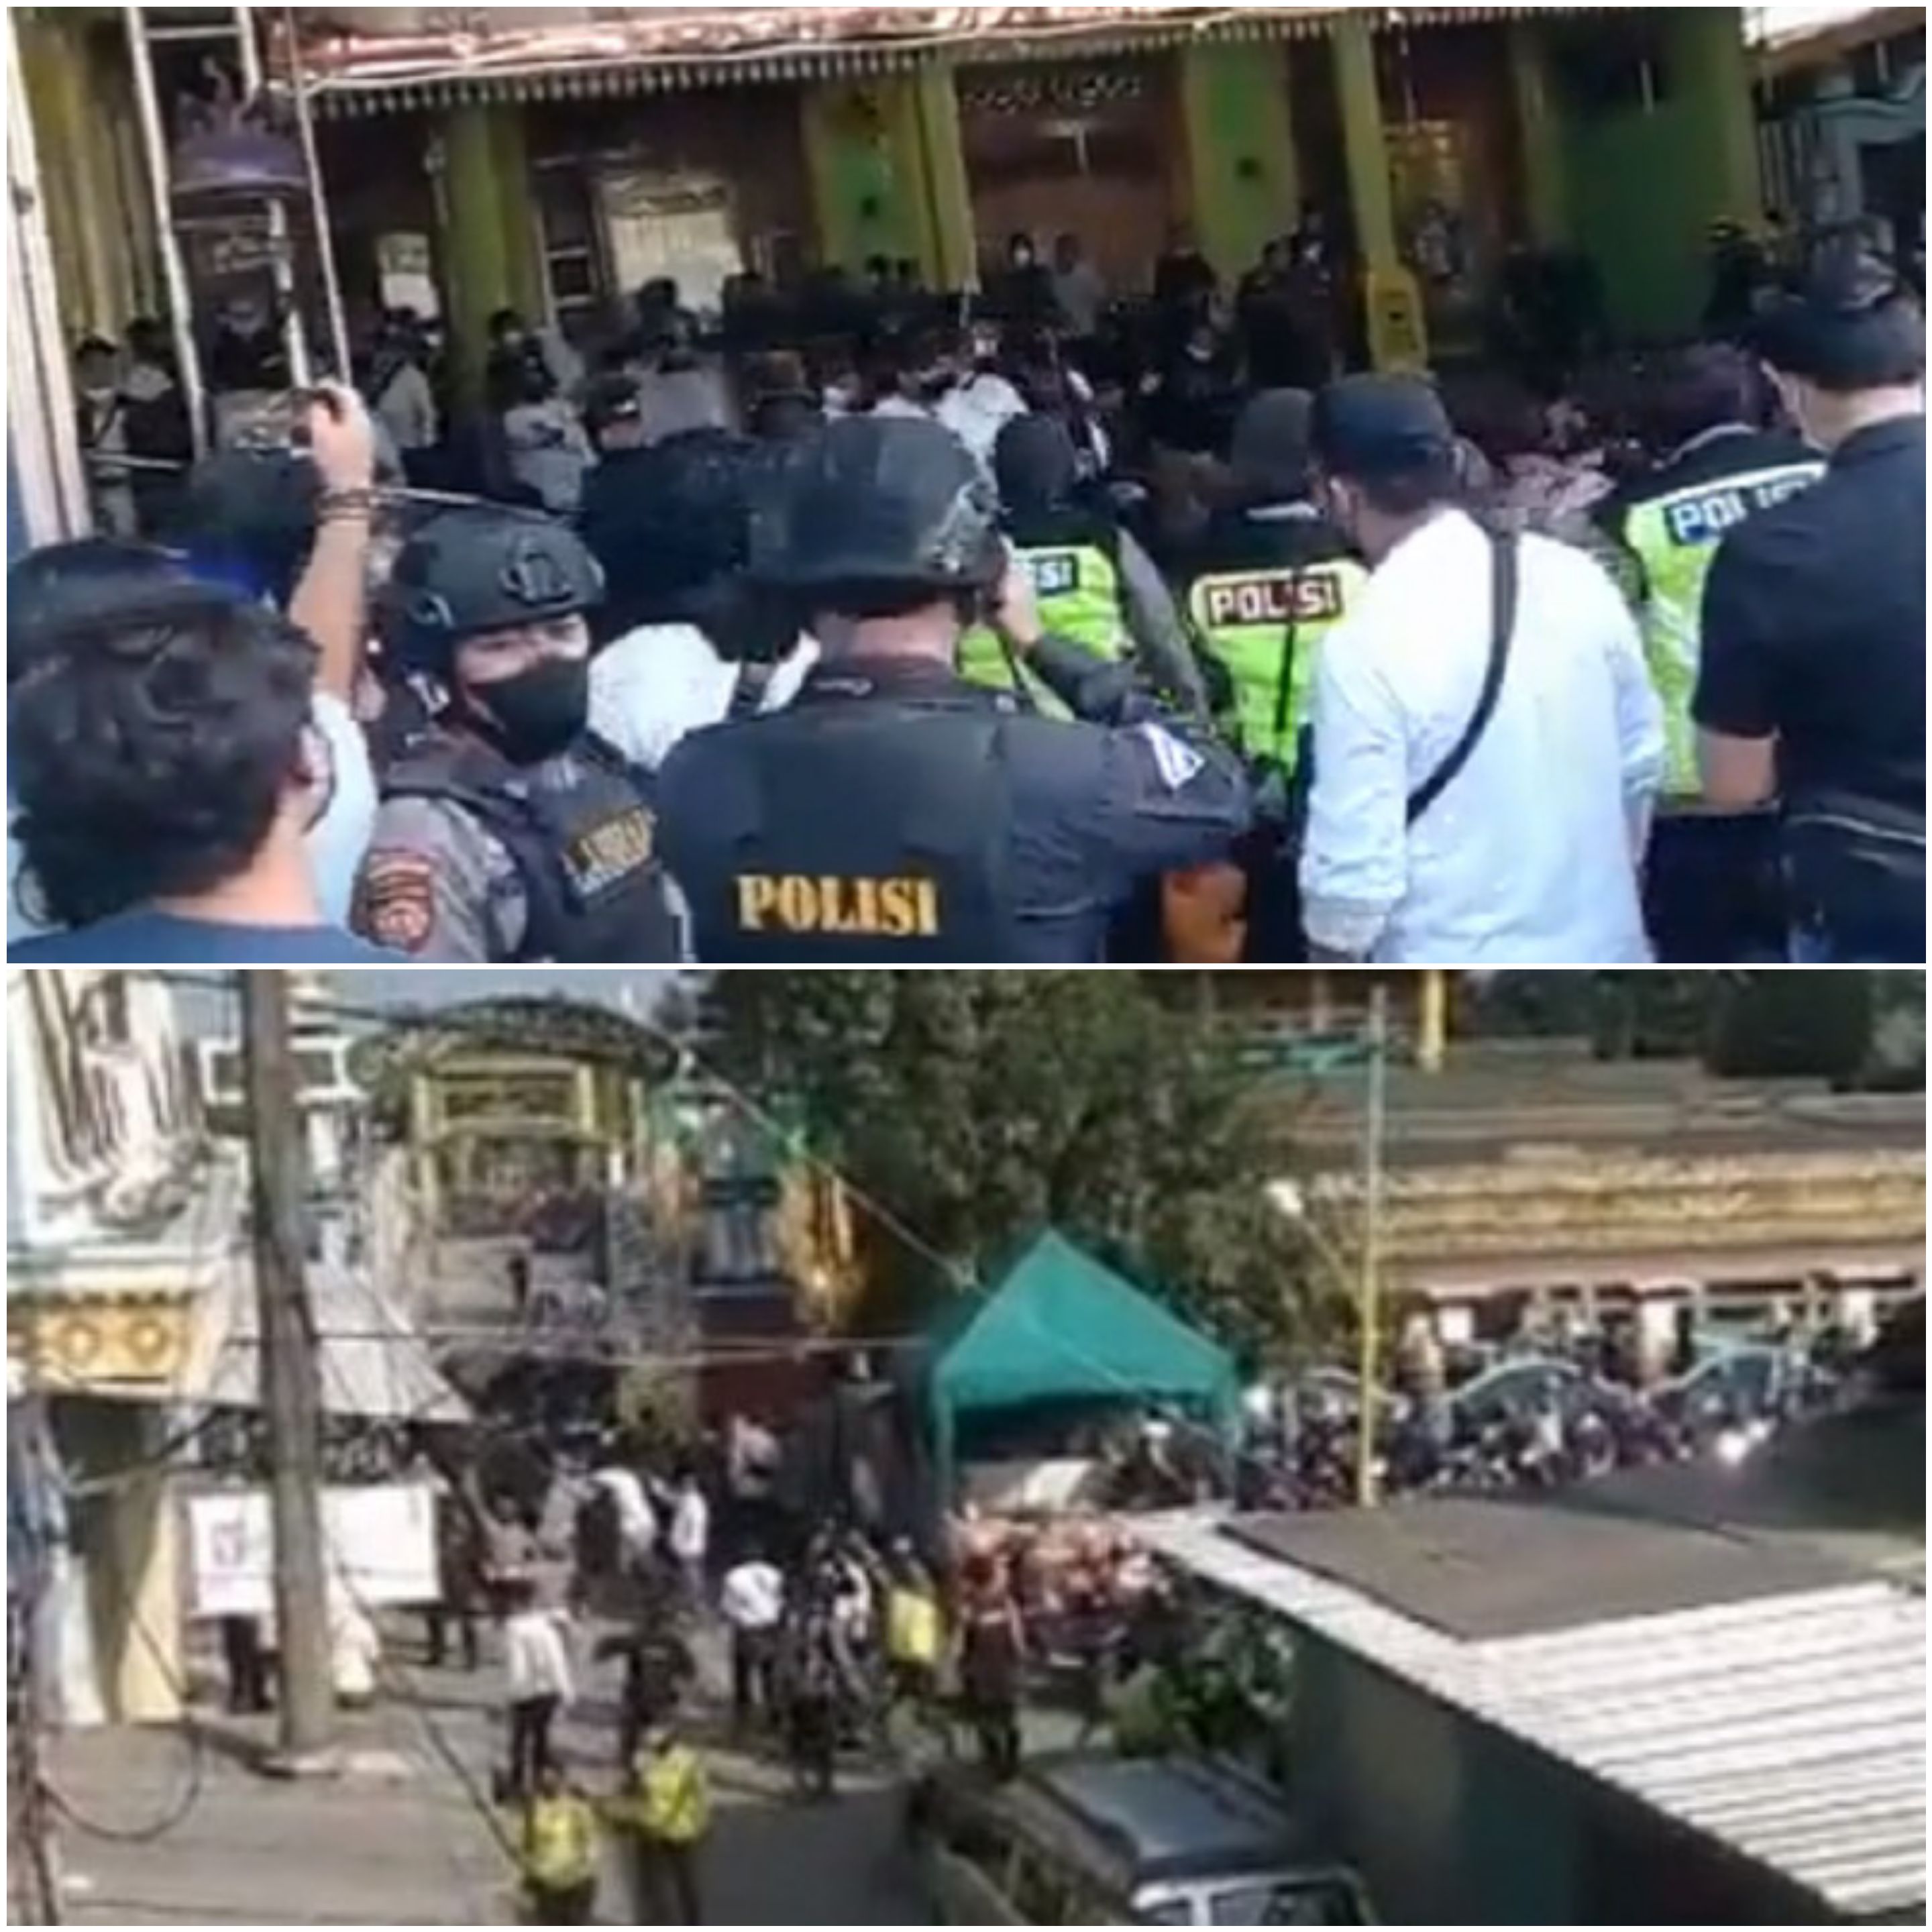 60 Orang Diamankan Polda Jatim usai Geruduk Pesantren Anak Kyai Jombang, Polisi: Kami Hunting  